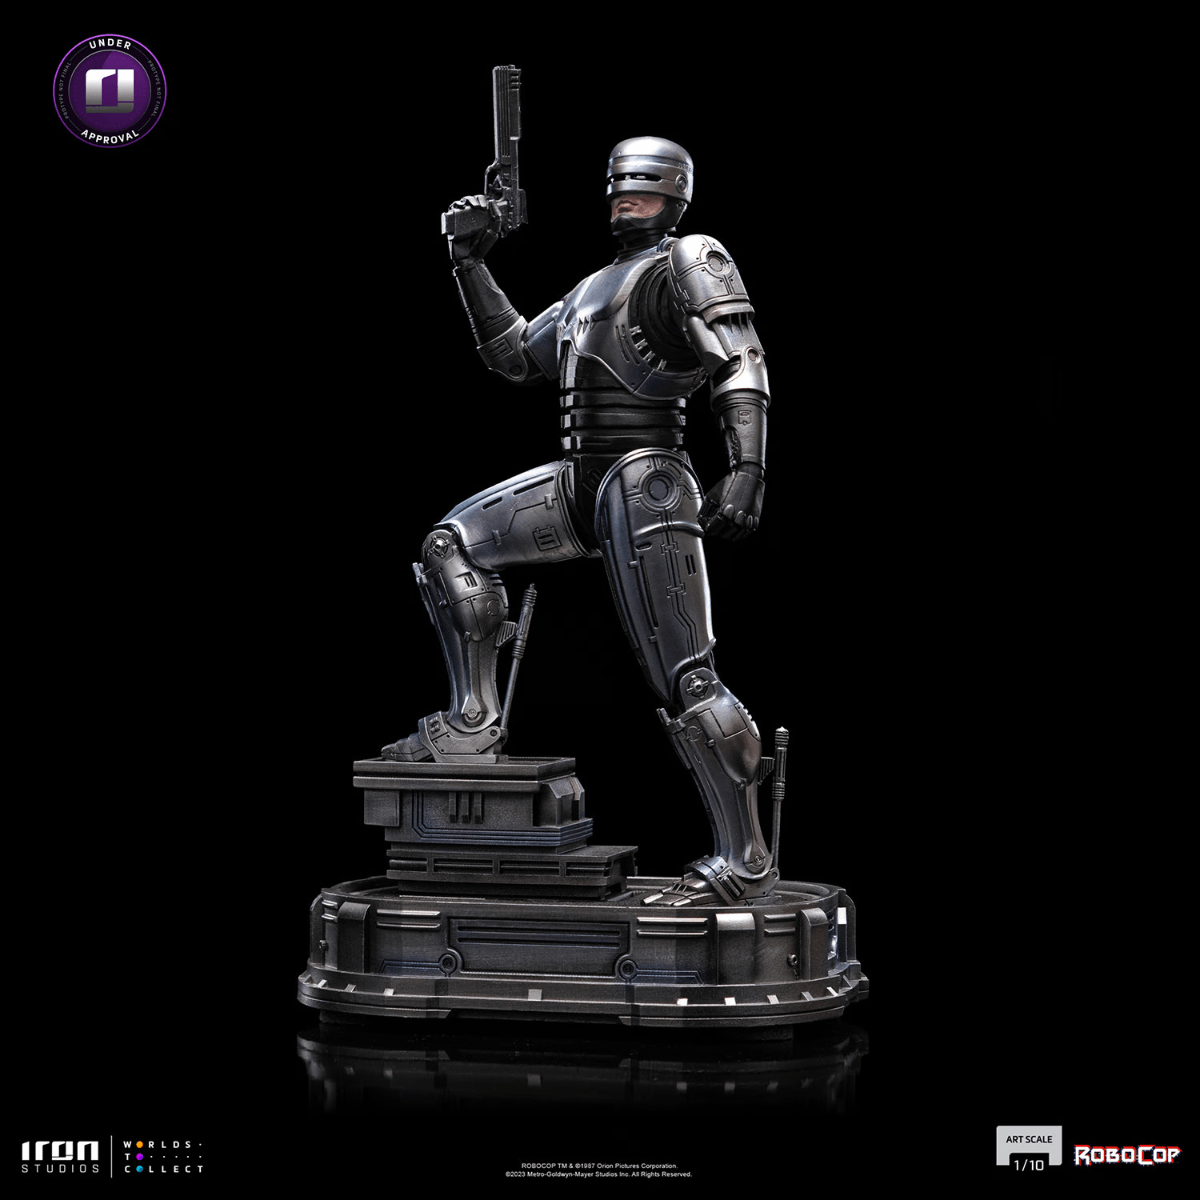 IRO54018 RoboCop - RoboCop 1:10 Scale Statue - Iron Studios - Titan Pop Culture